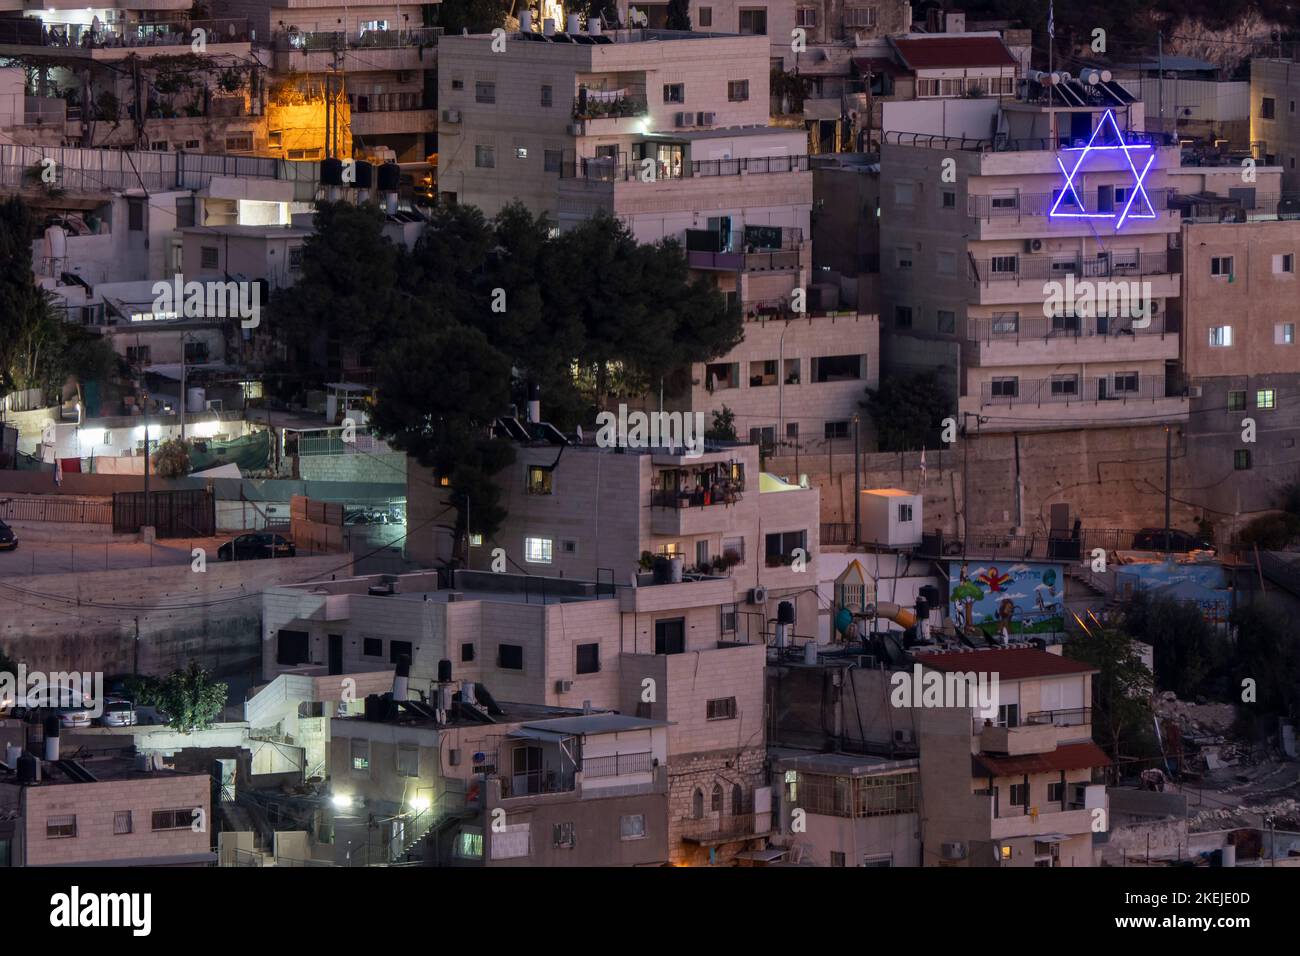 Blaue neonbeleuchtete Davidsterne installierten außerhalb von Gebäuden jüdischer Siedler in der Gegend von Batan al-Hawa in Silwan, einem überwiegend palästinensischen Viertel am Rande der Altstadt in Ostjerusalem, Israel. Seit dem sechs-Tage-Krieg von 1967 haben jüdische Organisationen versucht, eine jüdische Präsenz in Silwan wiederherzustellen. Mehr als 50 jüdische Familien leben unter rund 50,000 Palästinensern in der Region, einige in Häusern, die von Arabern erworben wurden und behaupten, sie wüssten nicht, dass sie ihre Häuser an jüdische Menschen verkaufen würden. Stockfoto